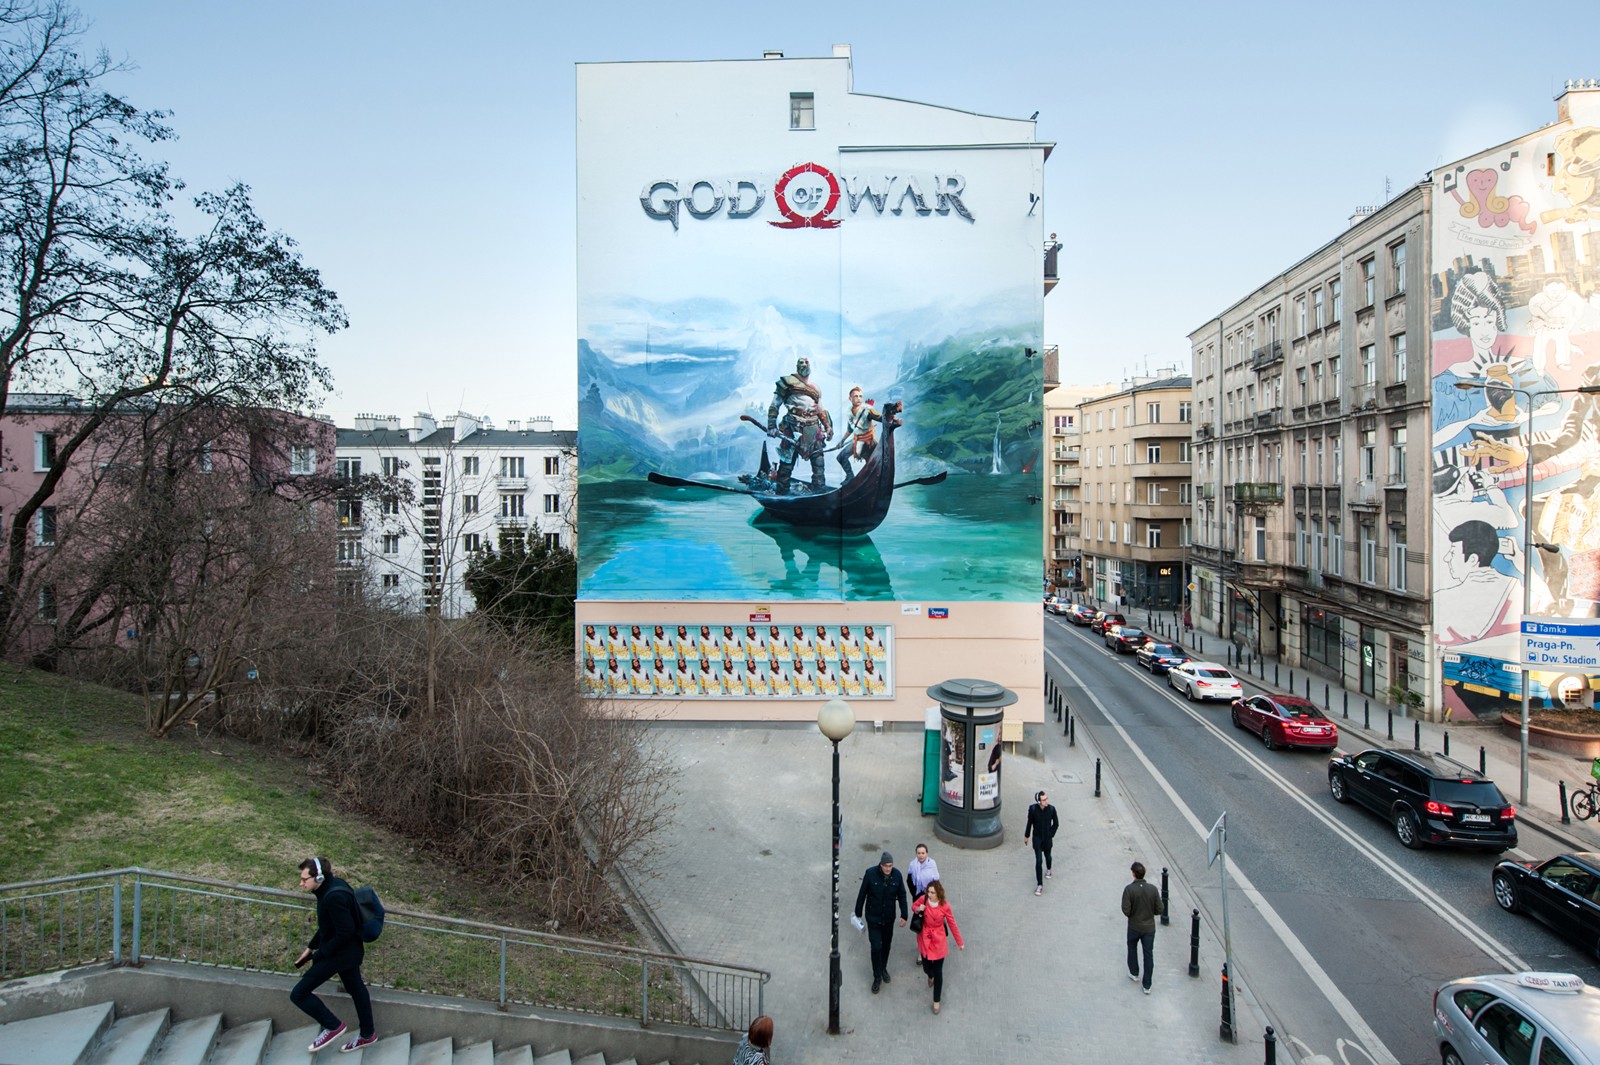 Widok na ulice Tamka na warszawskim Powiślu z namalowanym muralem reklamowym | God of War | Portfolio